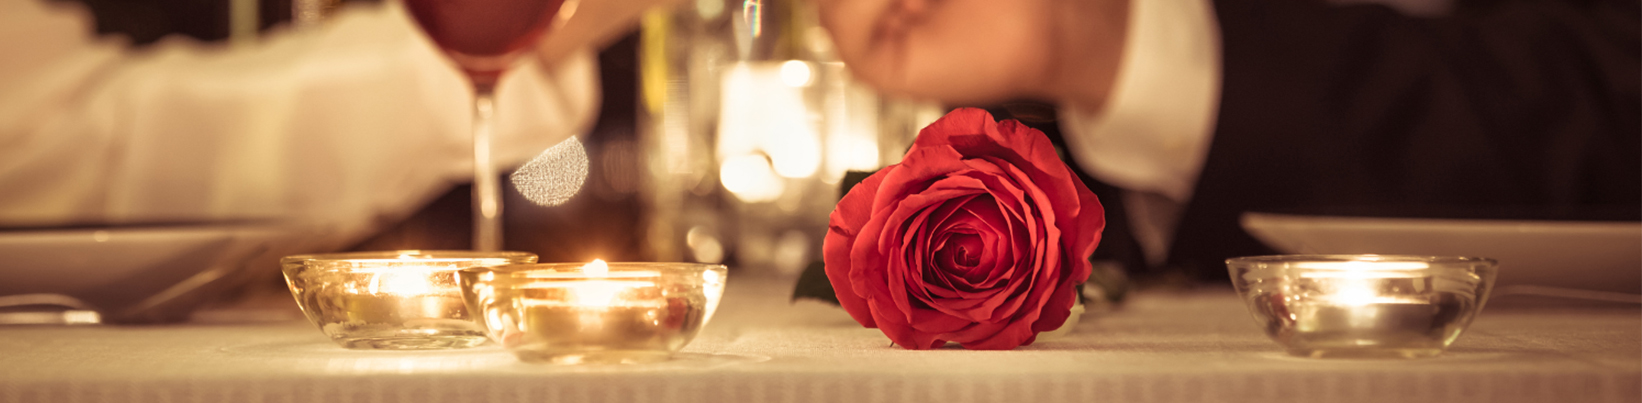 Romantischer Esstisch mit 2 Gläsern Wein und Kerzen